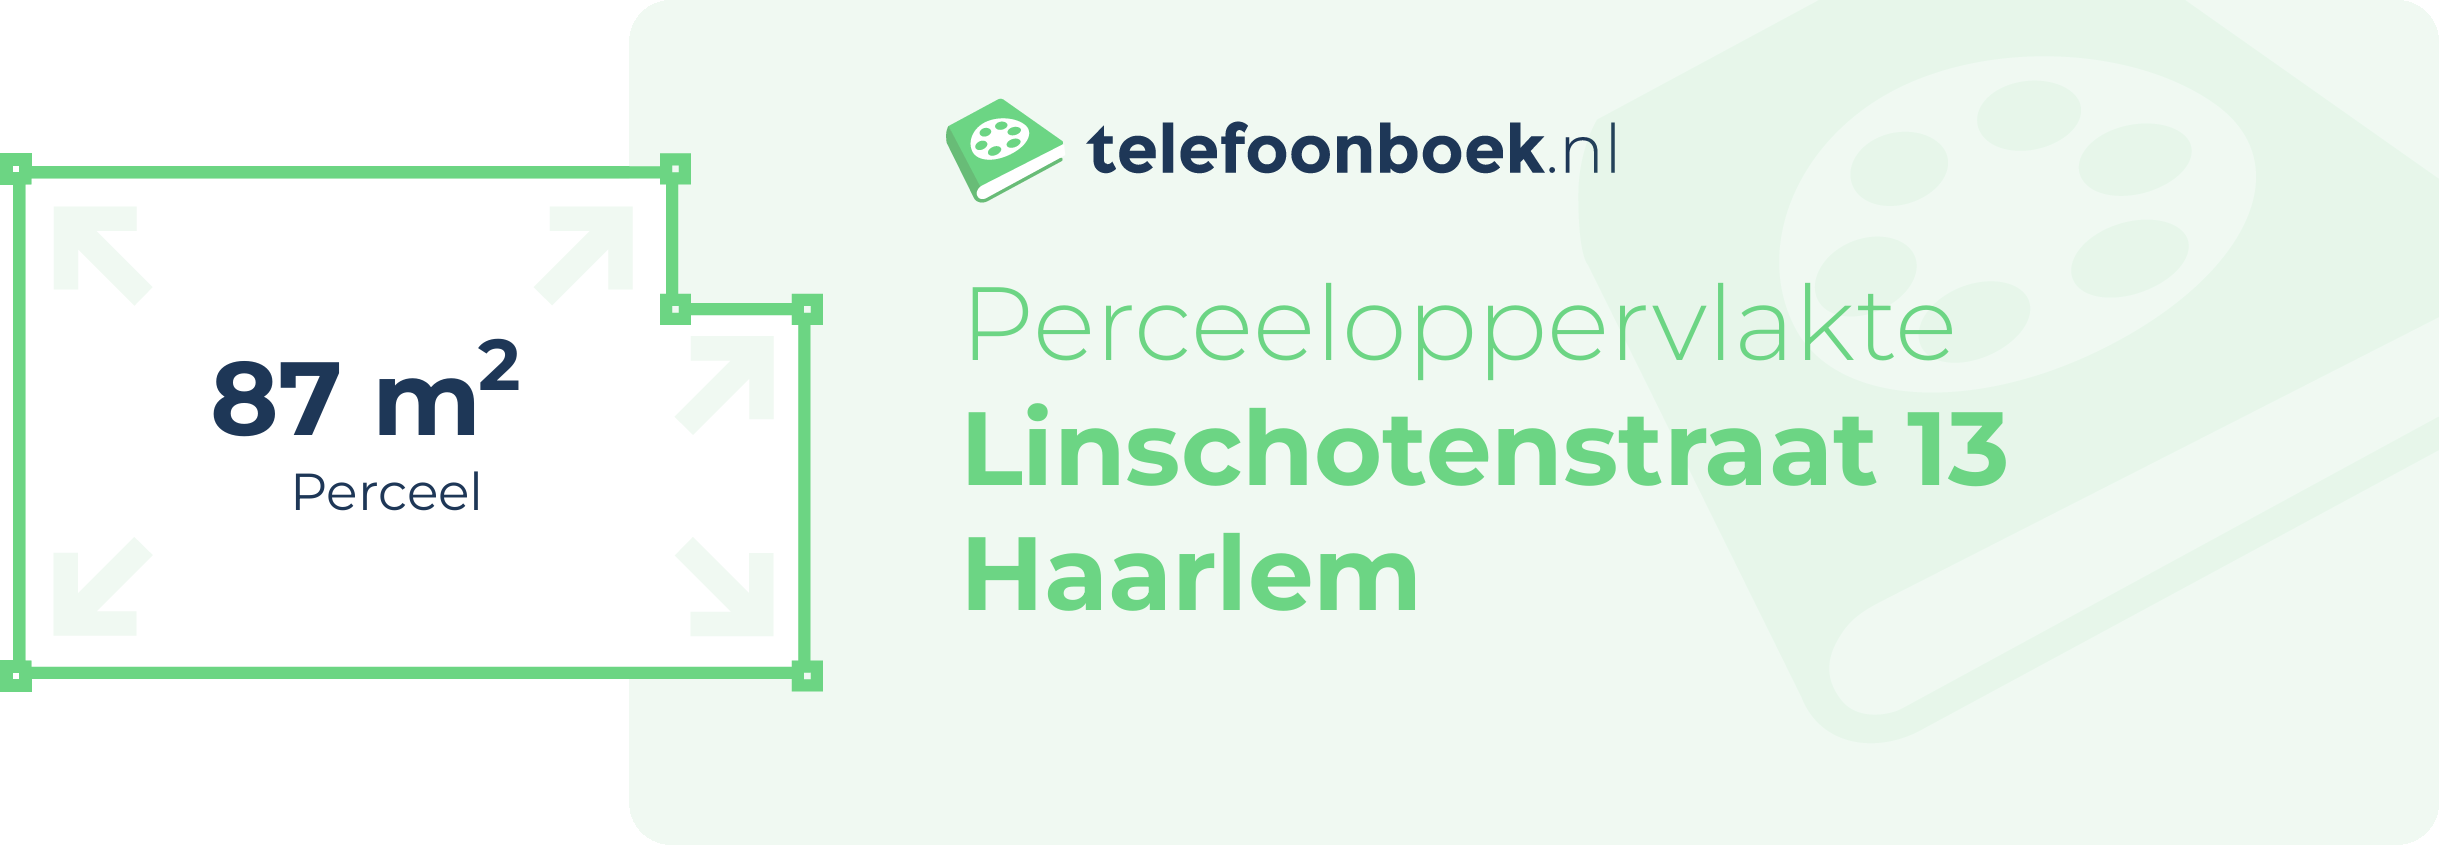 Perceeloppervlakte Linschotenstraat 13 Haarlem